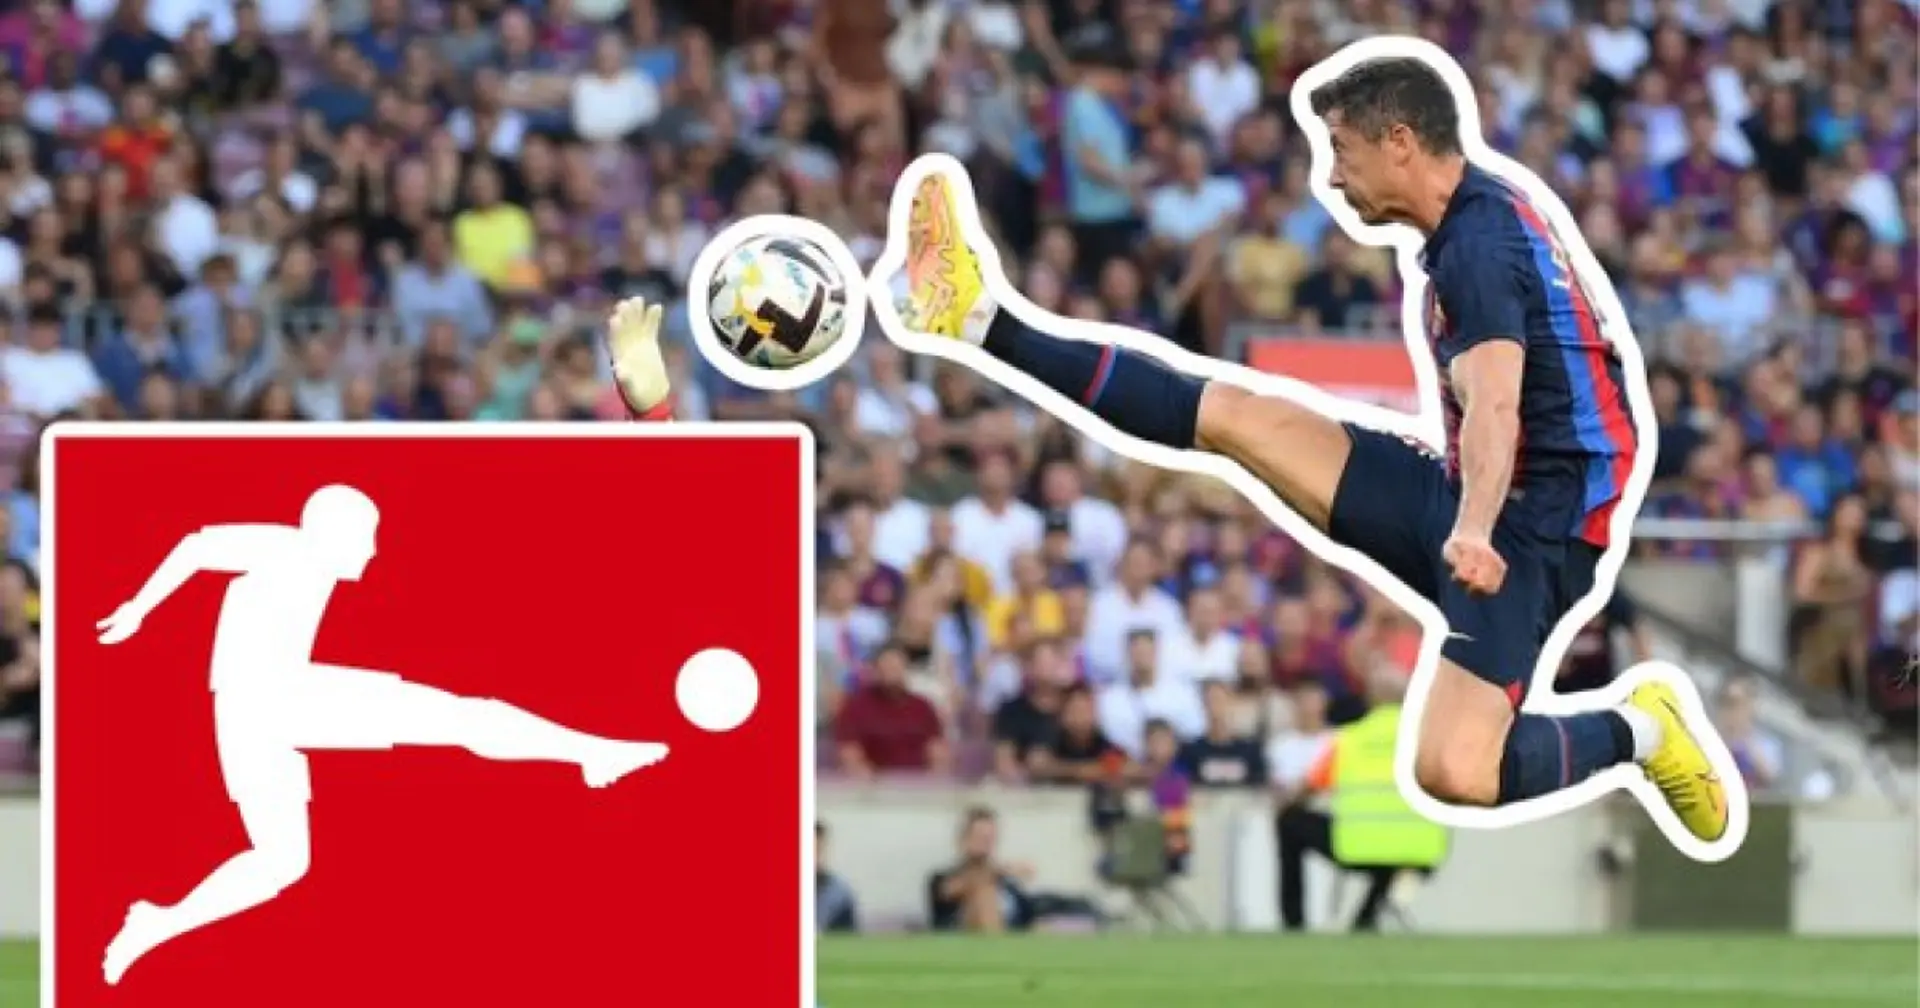 La photo de Lewandowski recréant le logo de la Bundesliga devient virale